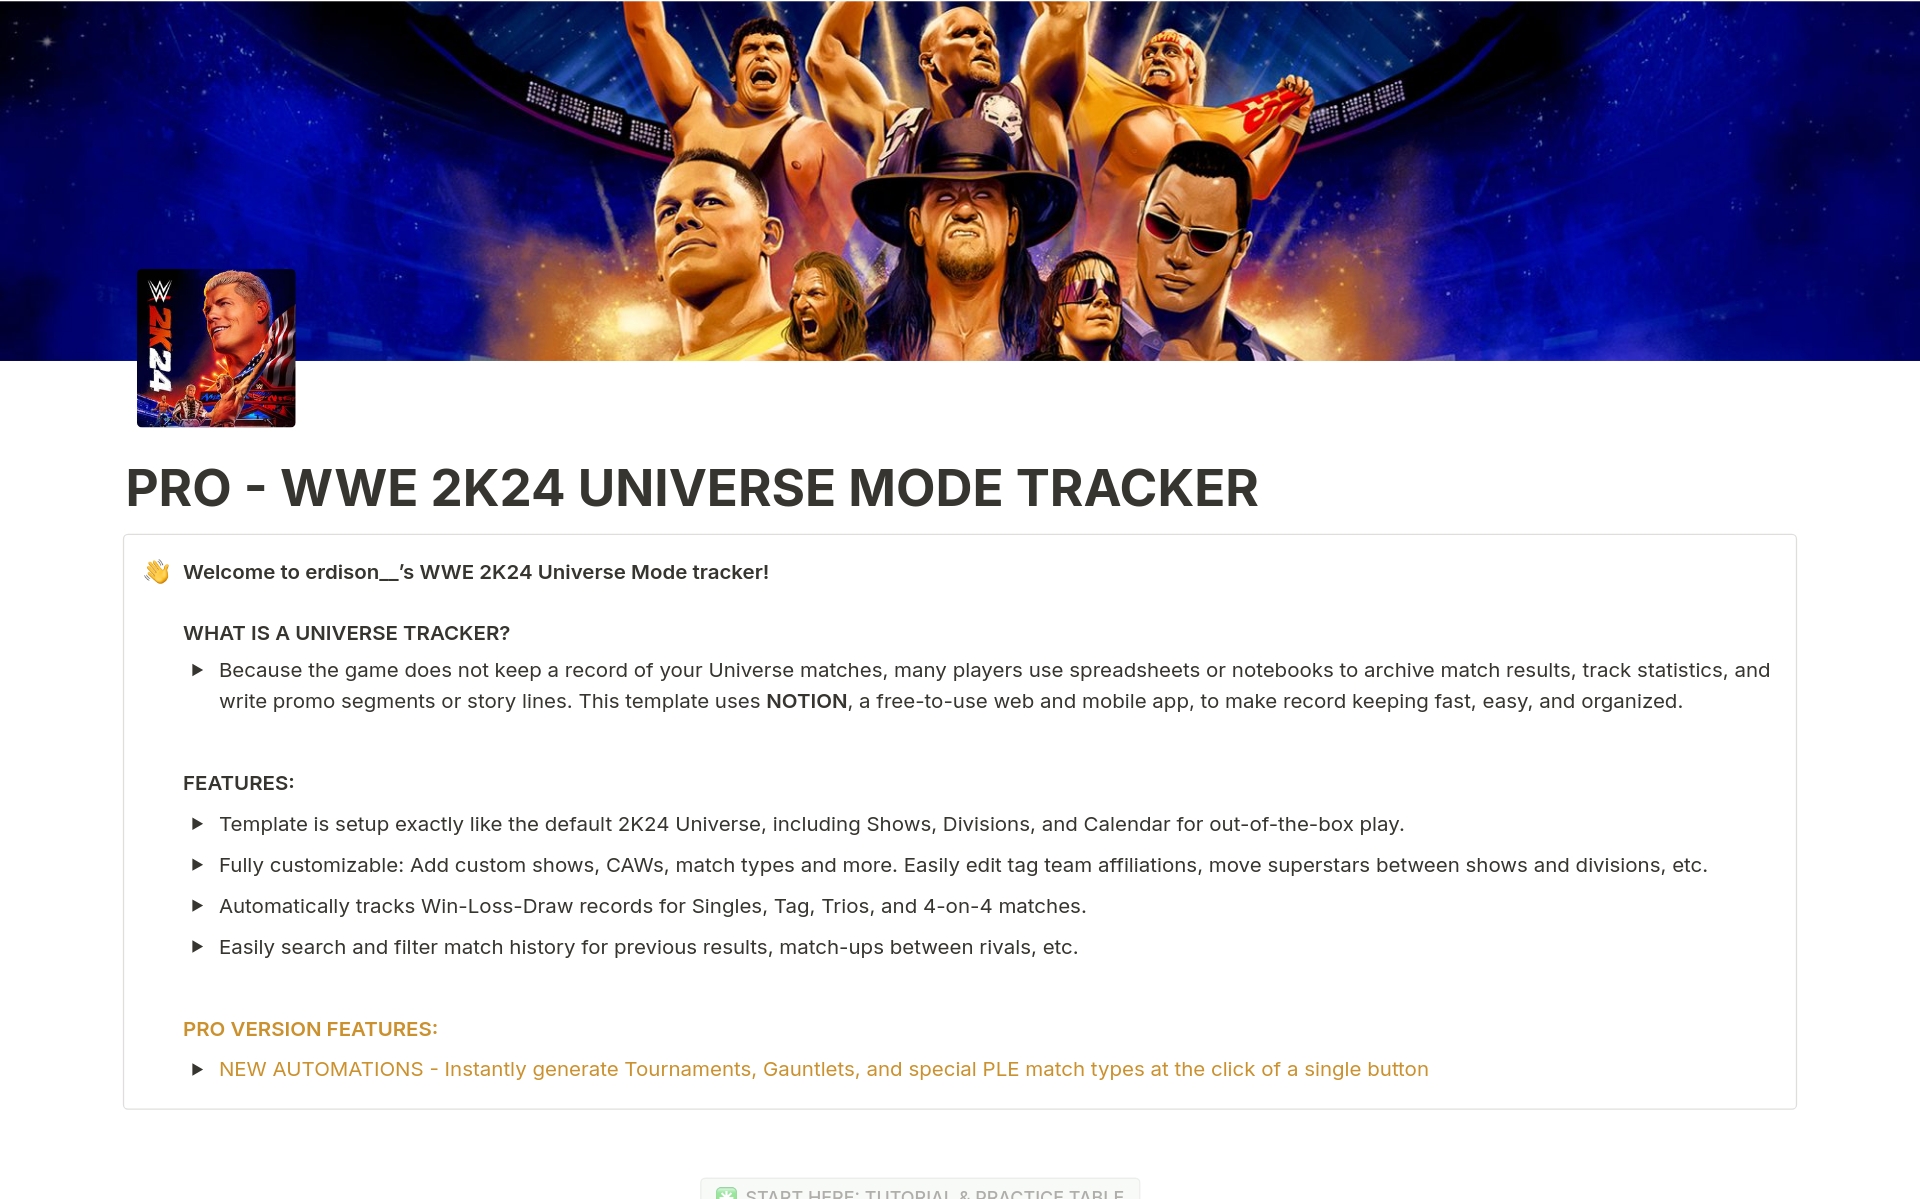 Uma prévia do modelo para PRO - WWE 2K24 Universe Mode Tracker